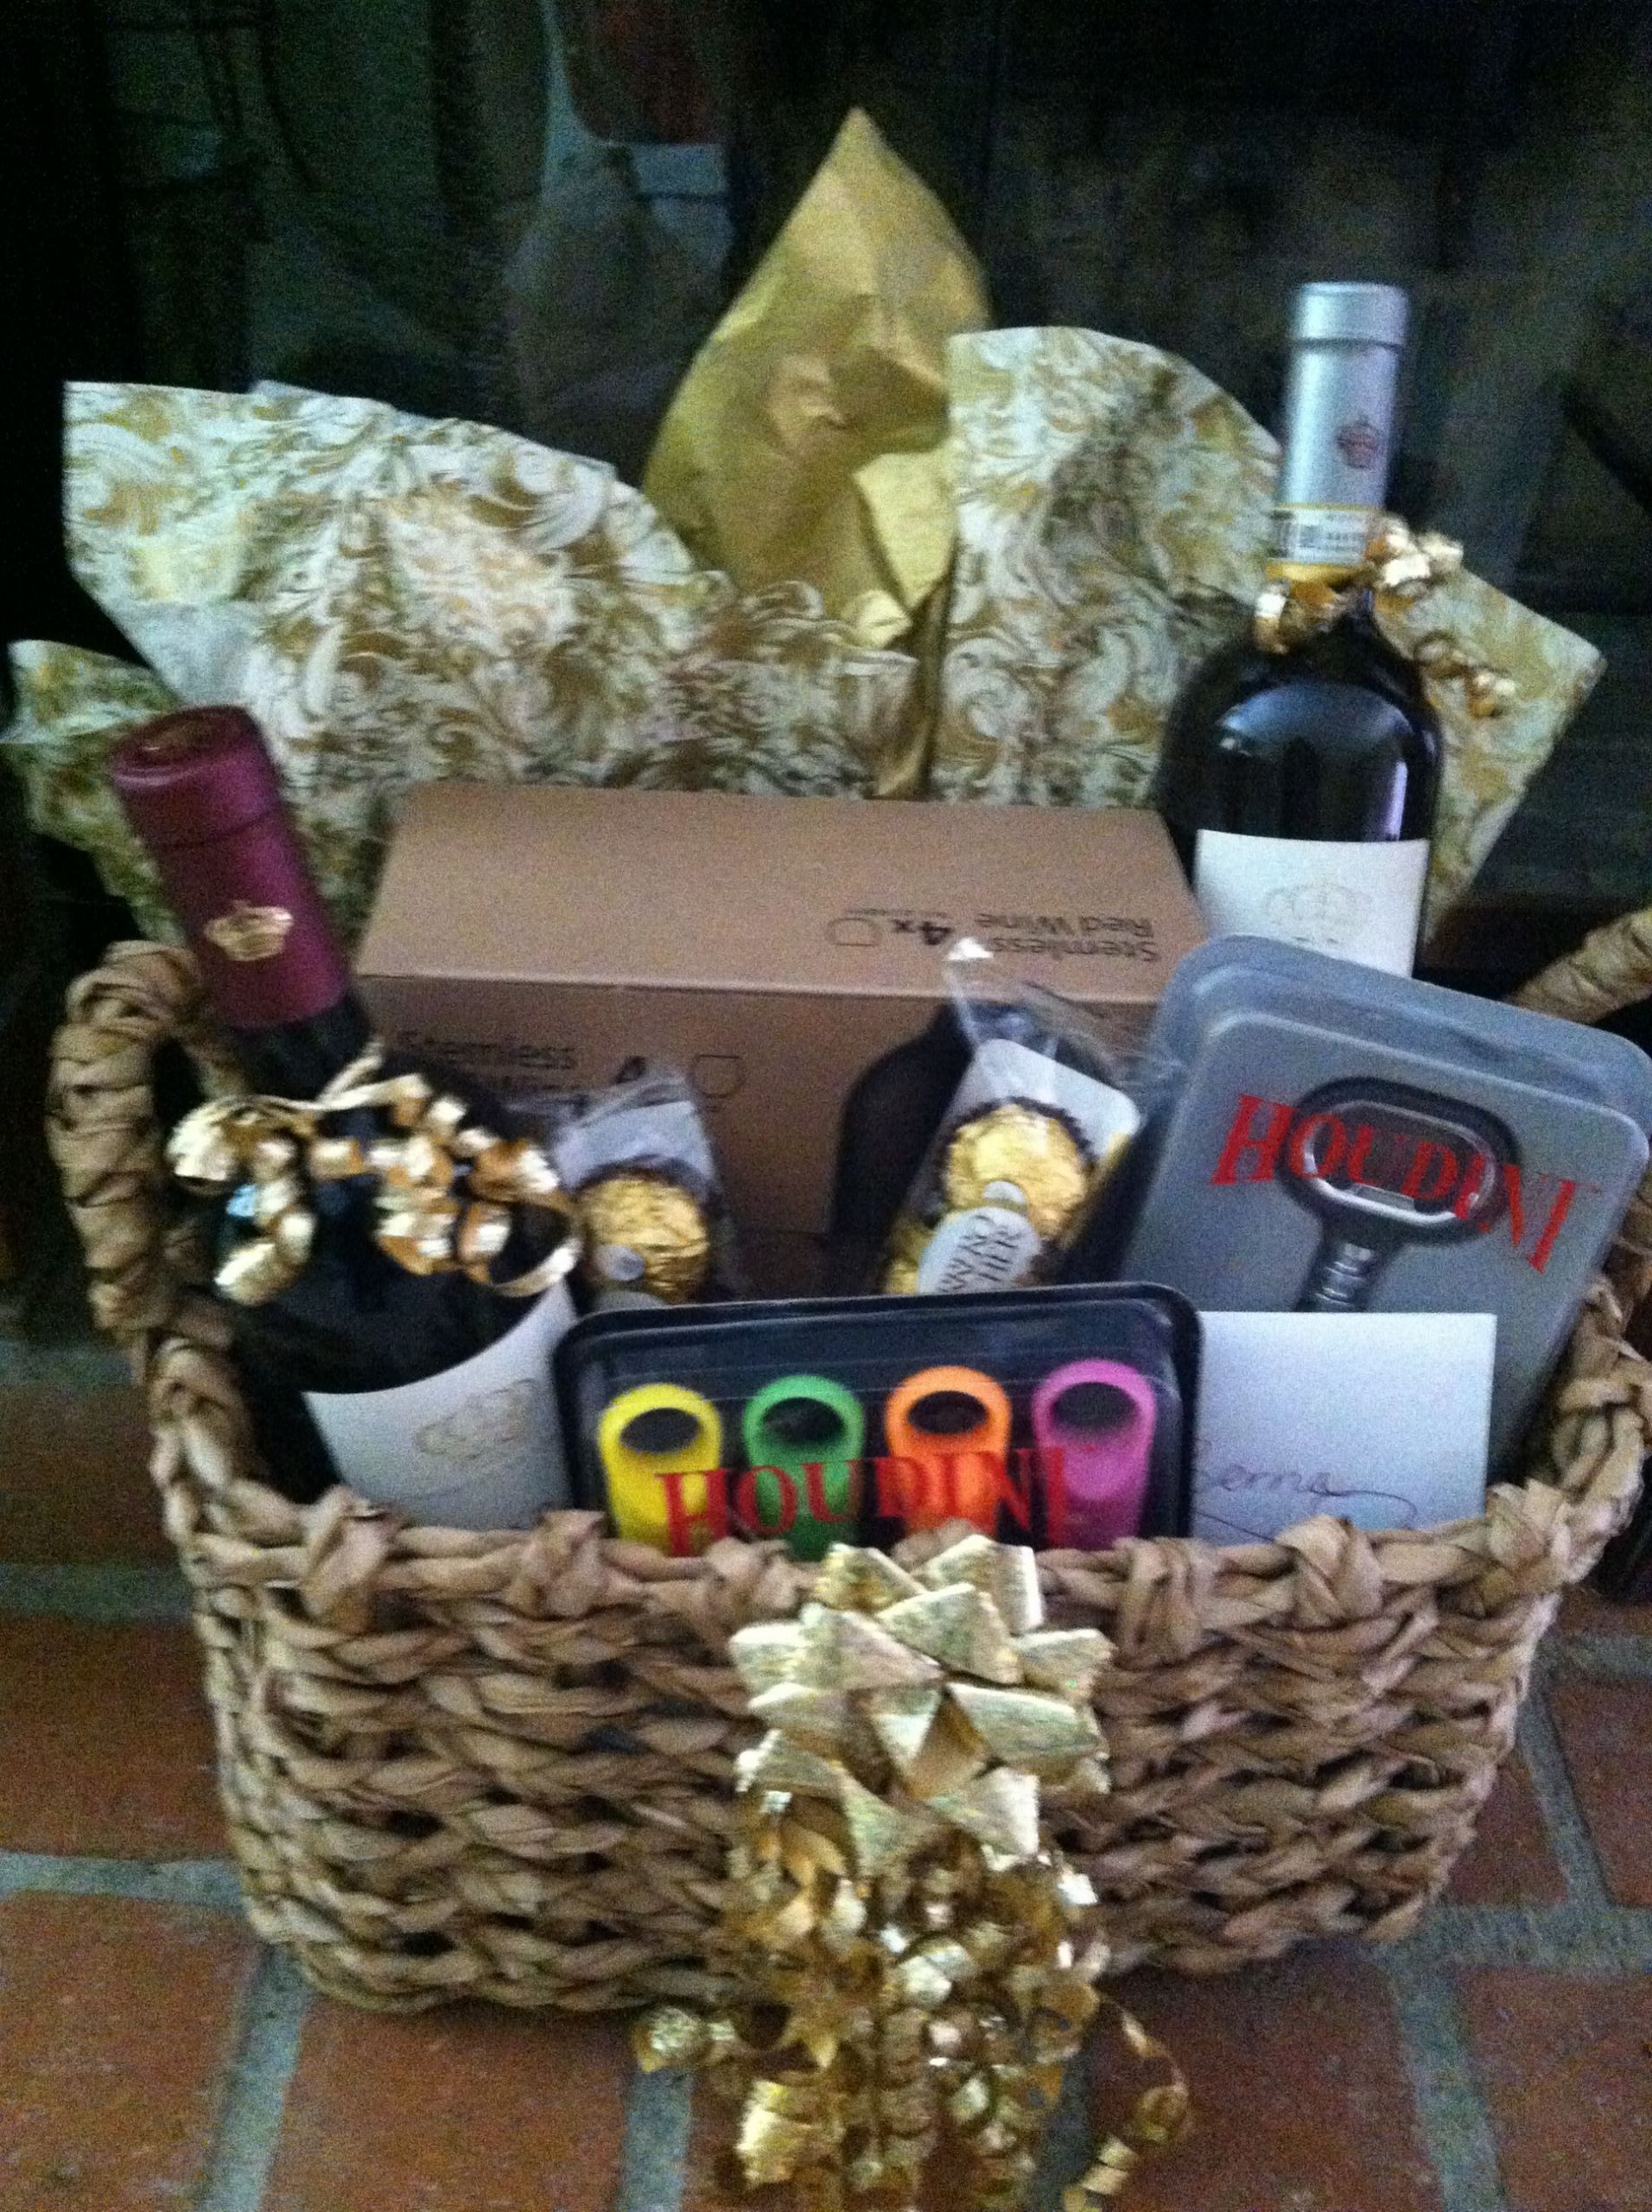 Creative Bridal Shower Gift Basket Ideas
 Wine basket I made for a Bridal Sower